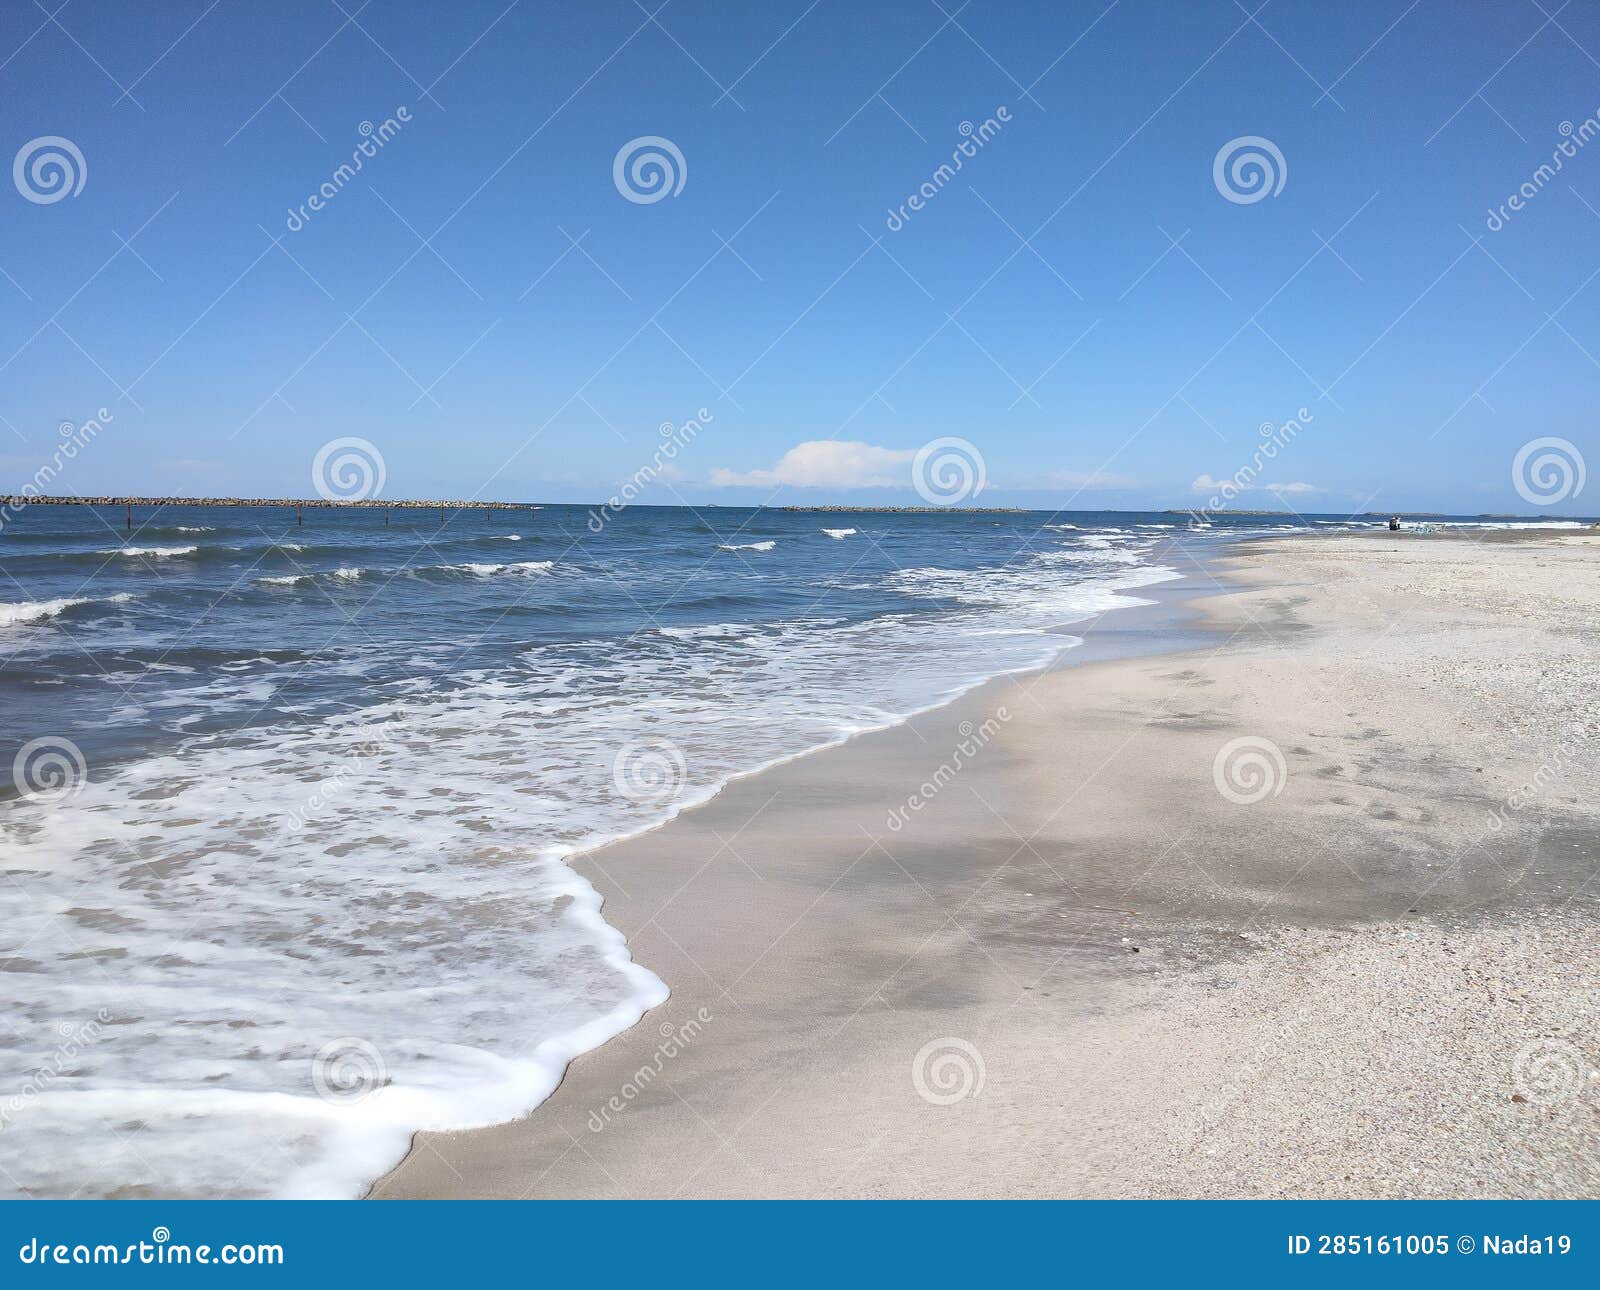 ras albar beach